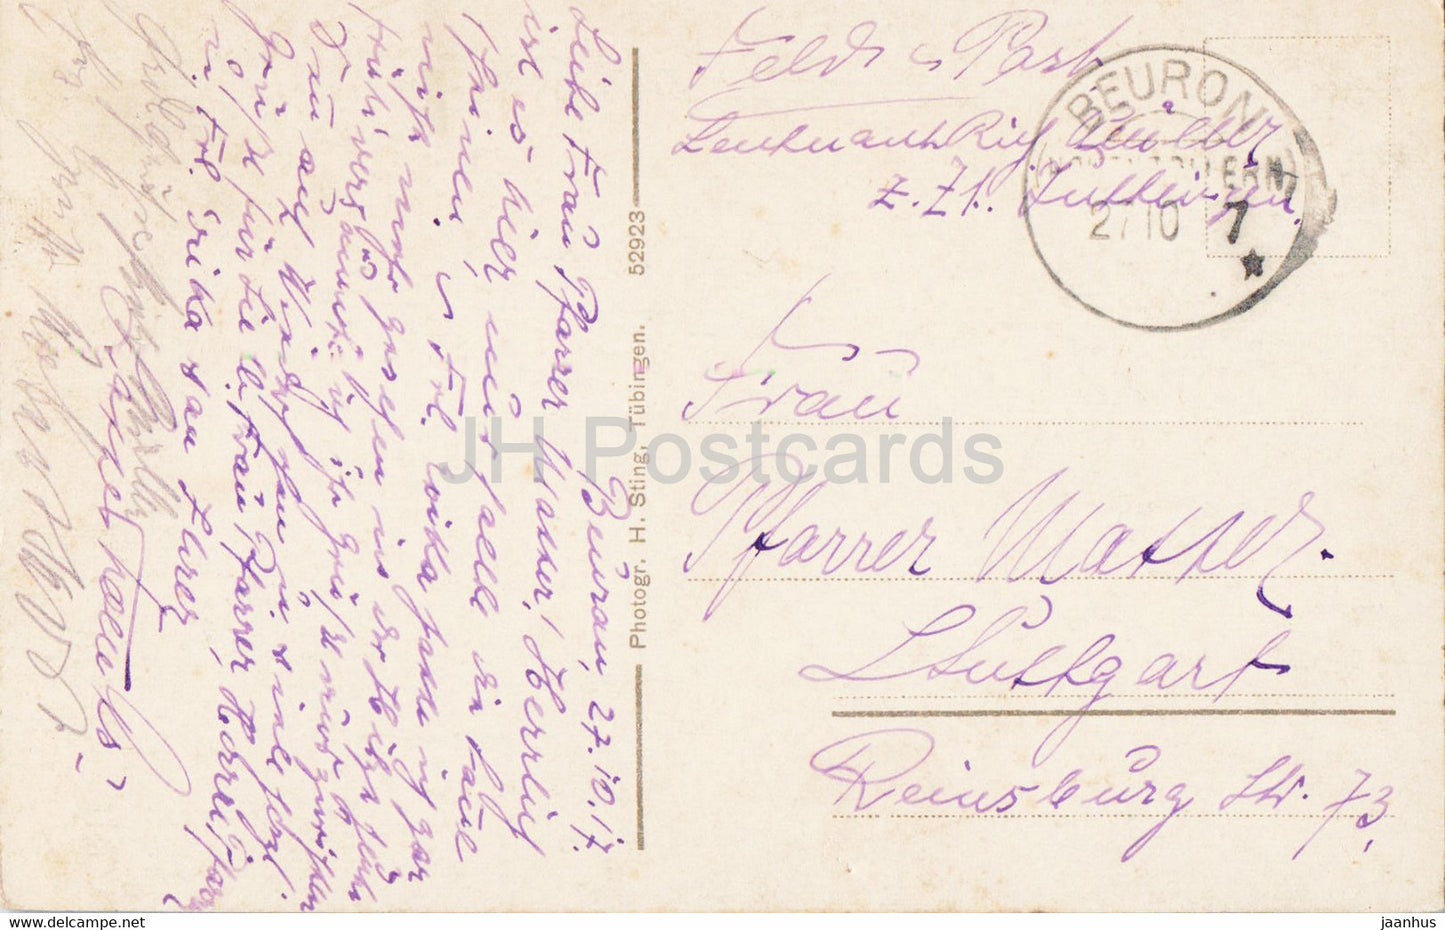 Donautal - Schloss Bronnen 788 m mit Blick auf Irrendorf - Feldpost - carte postale ancienne de courrier militaire - 1917 - Allemagne - utilisé